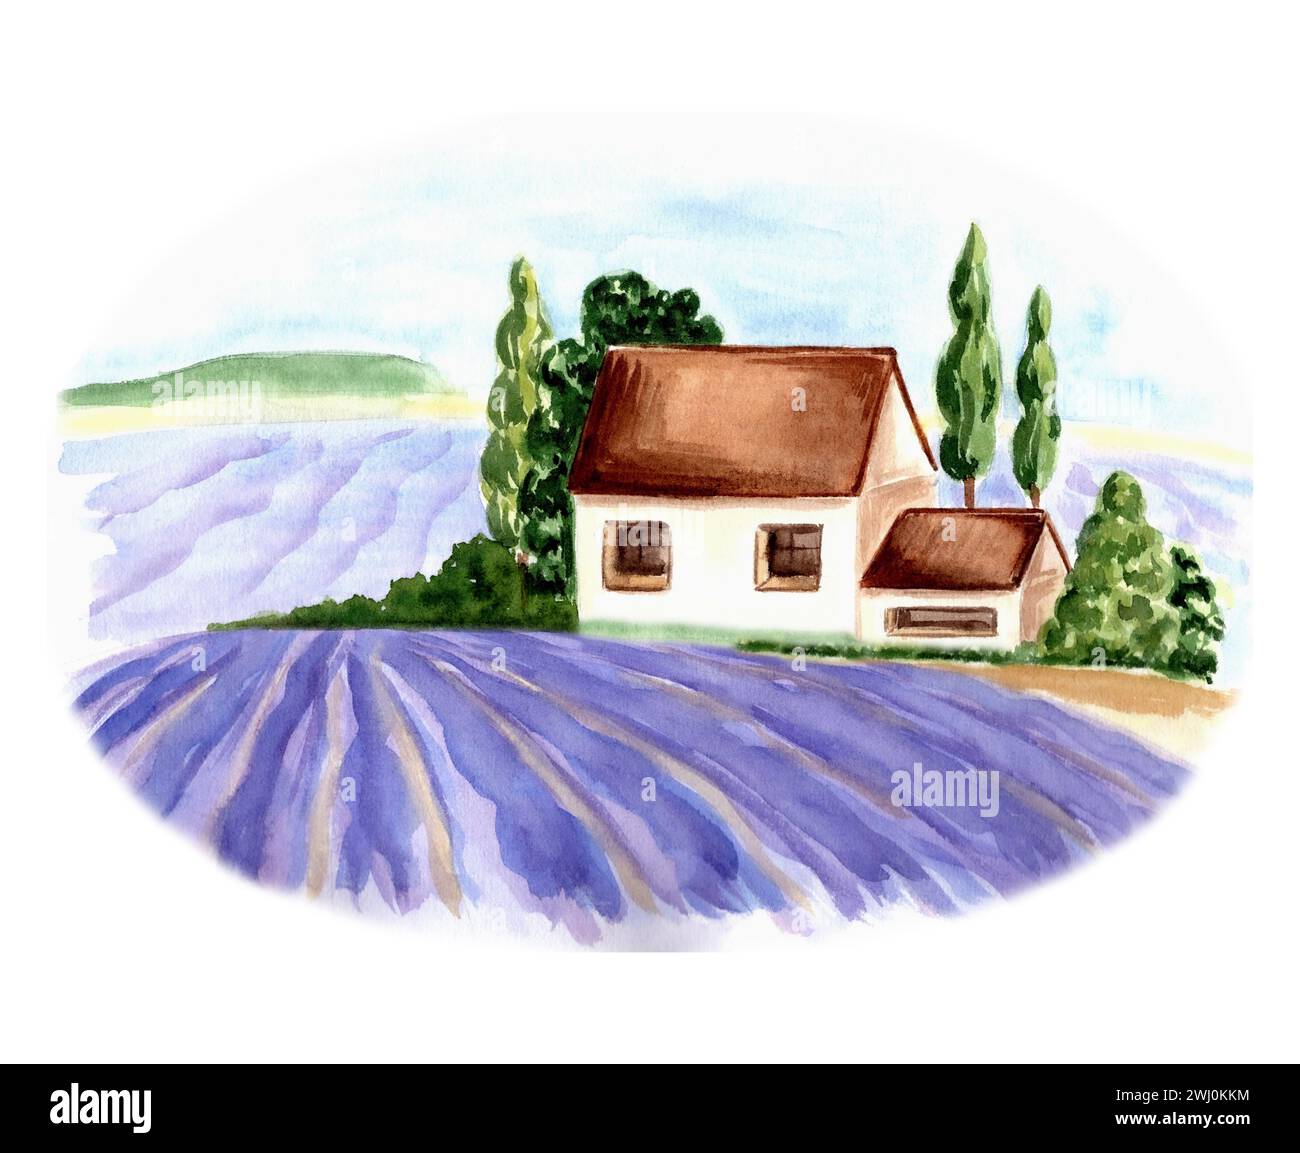 Champs violets de lavande et ferme sur fond d'arbres et de ciel. Illustration aquarelle du paysage d'été de Provence. Isolé dessiné à la main Banque D'Images